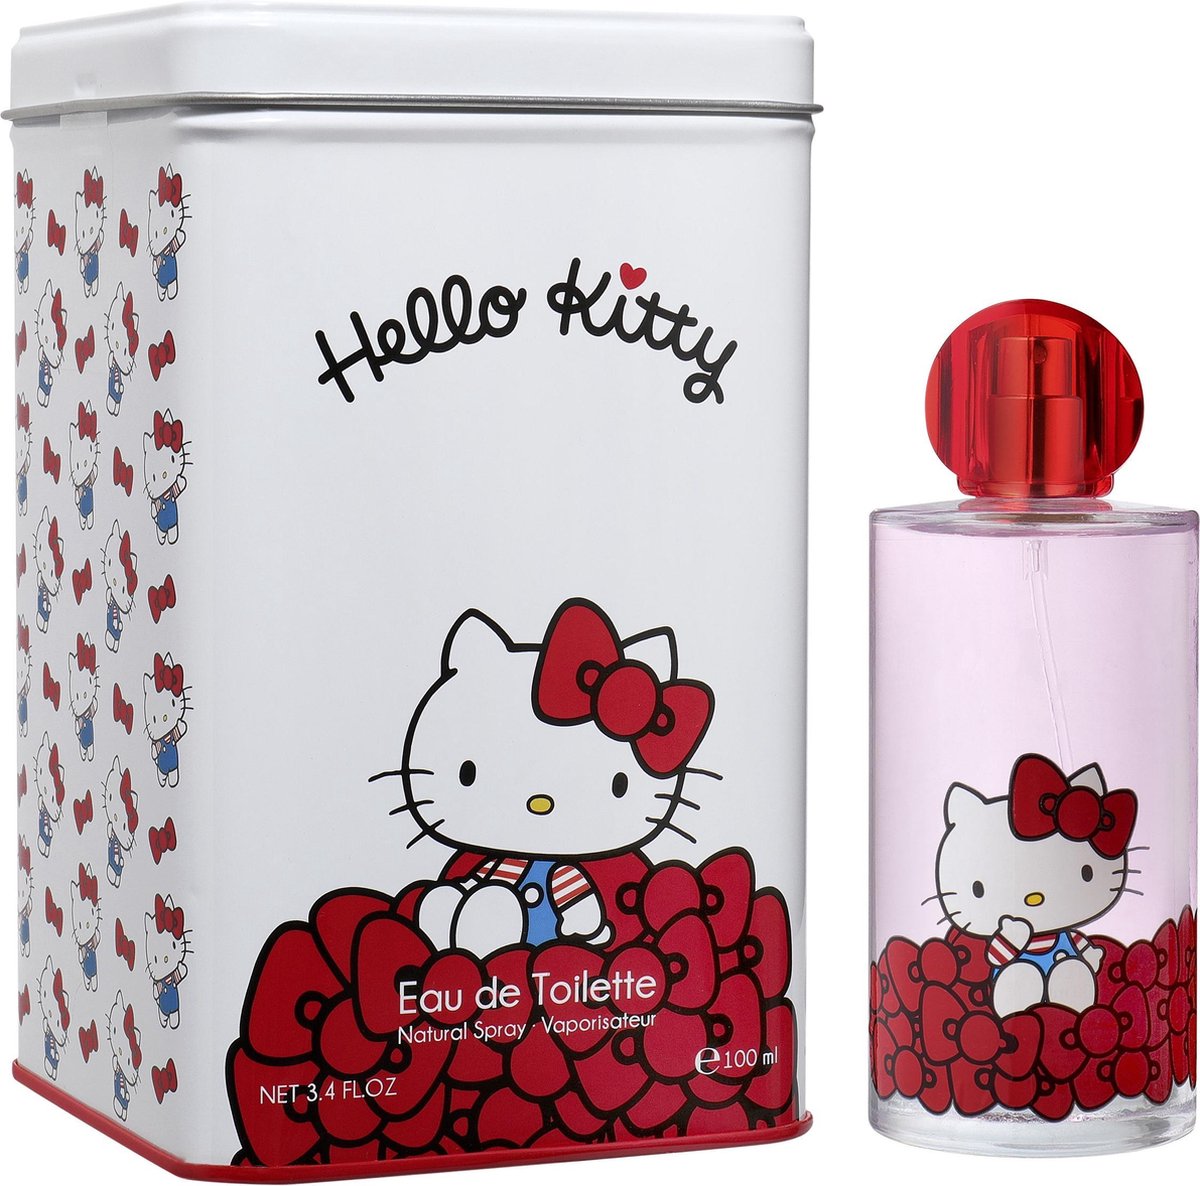 Hello Kitty Metallic Box EDT 100 ml - AirVal